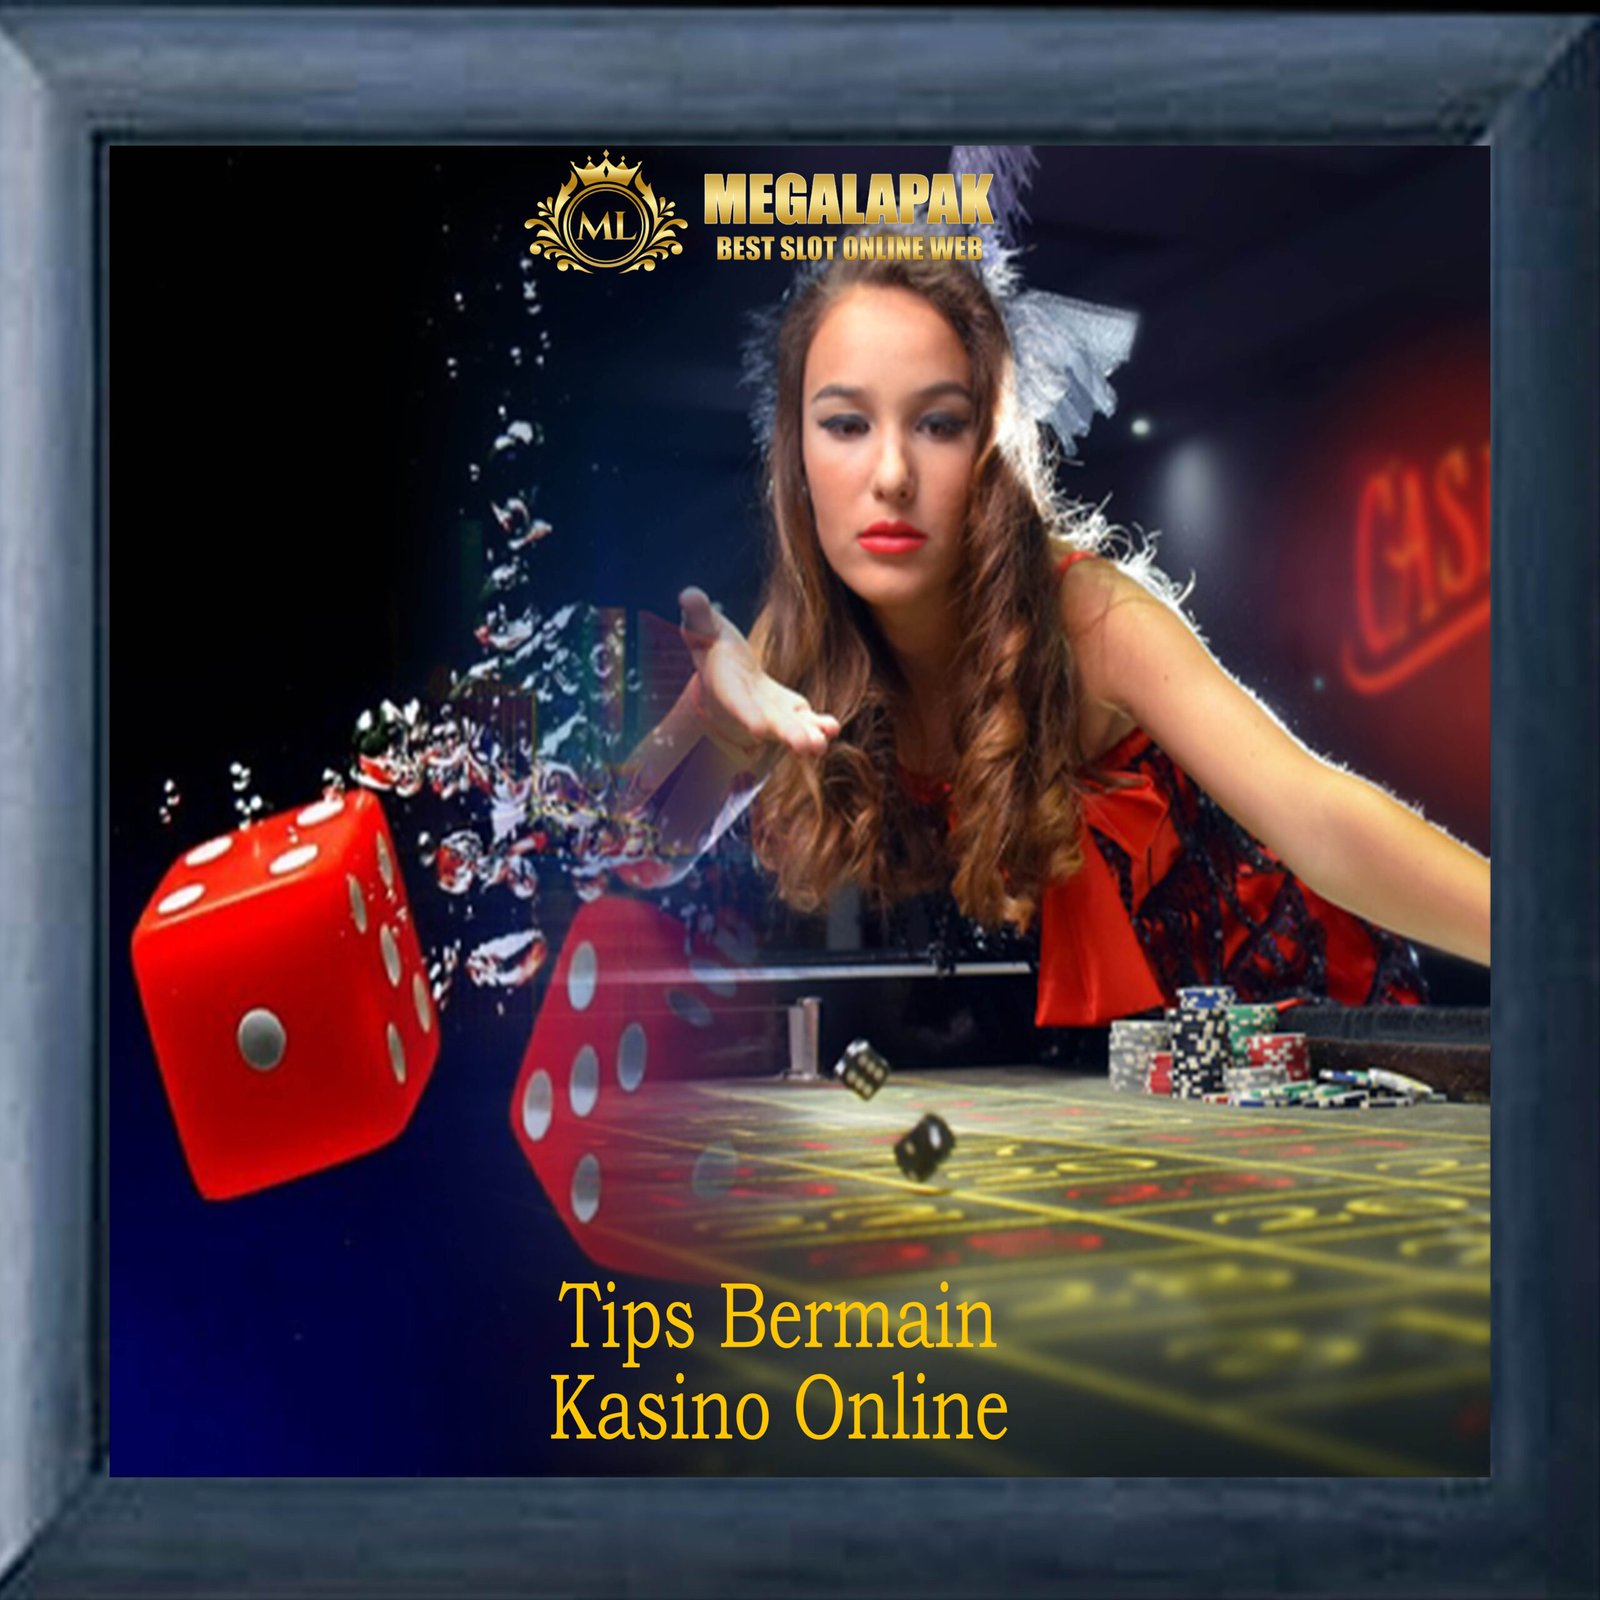 Tips Bermain Kasino Online Megalapak